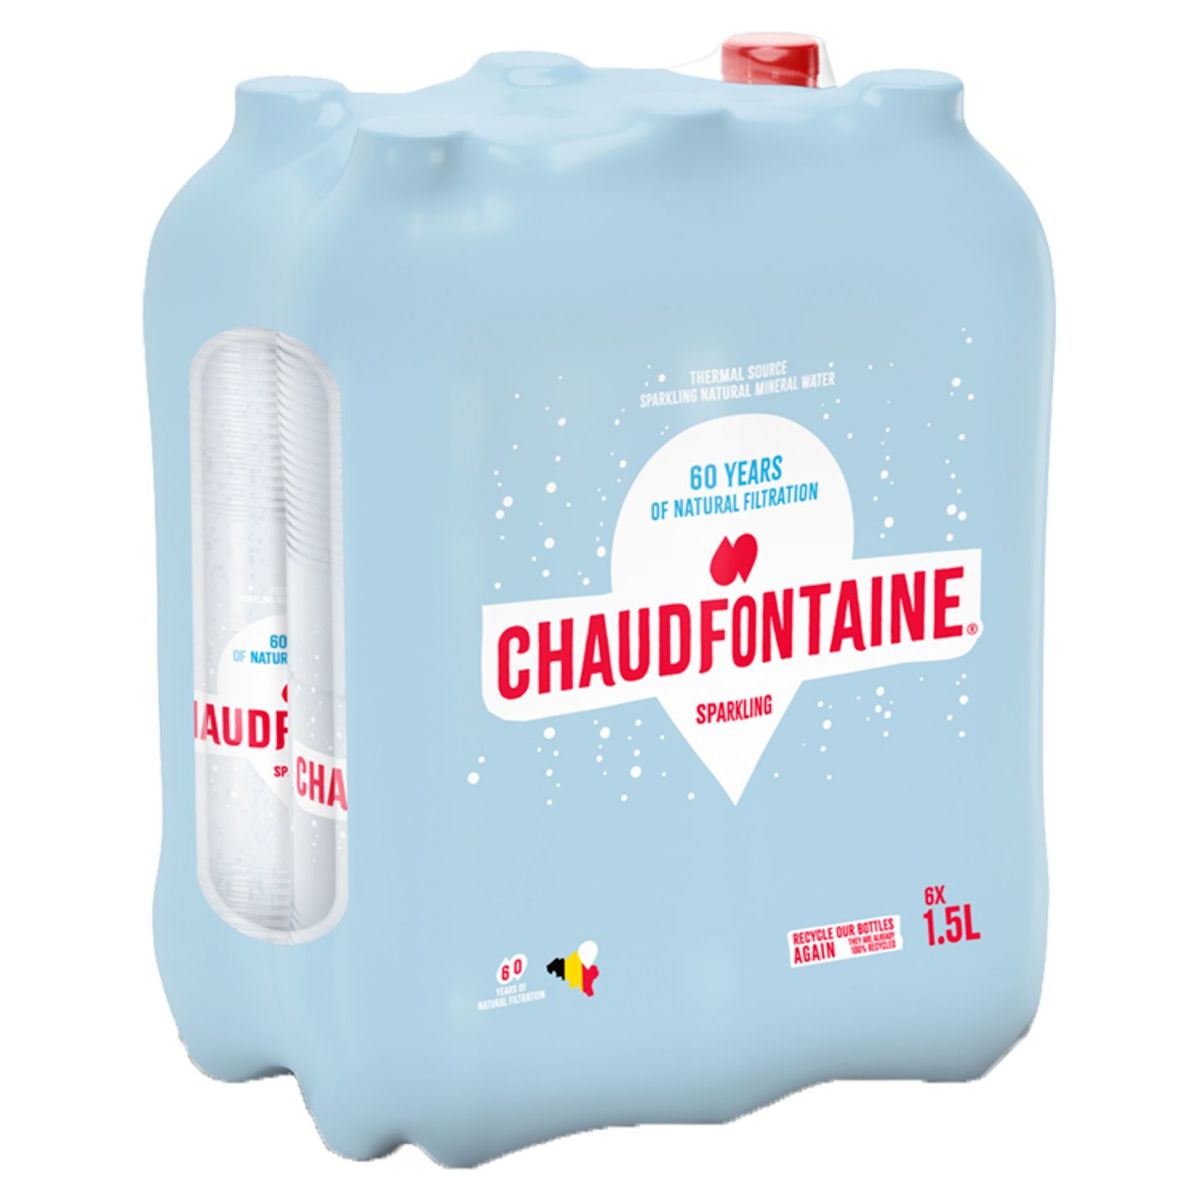 Chaudfontaine Sparkling Pet 1500 ml X 6